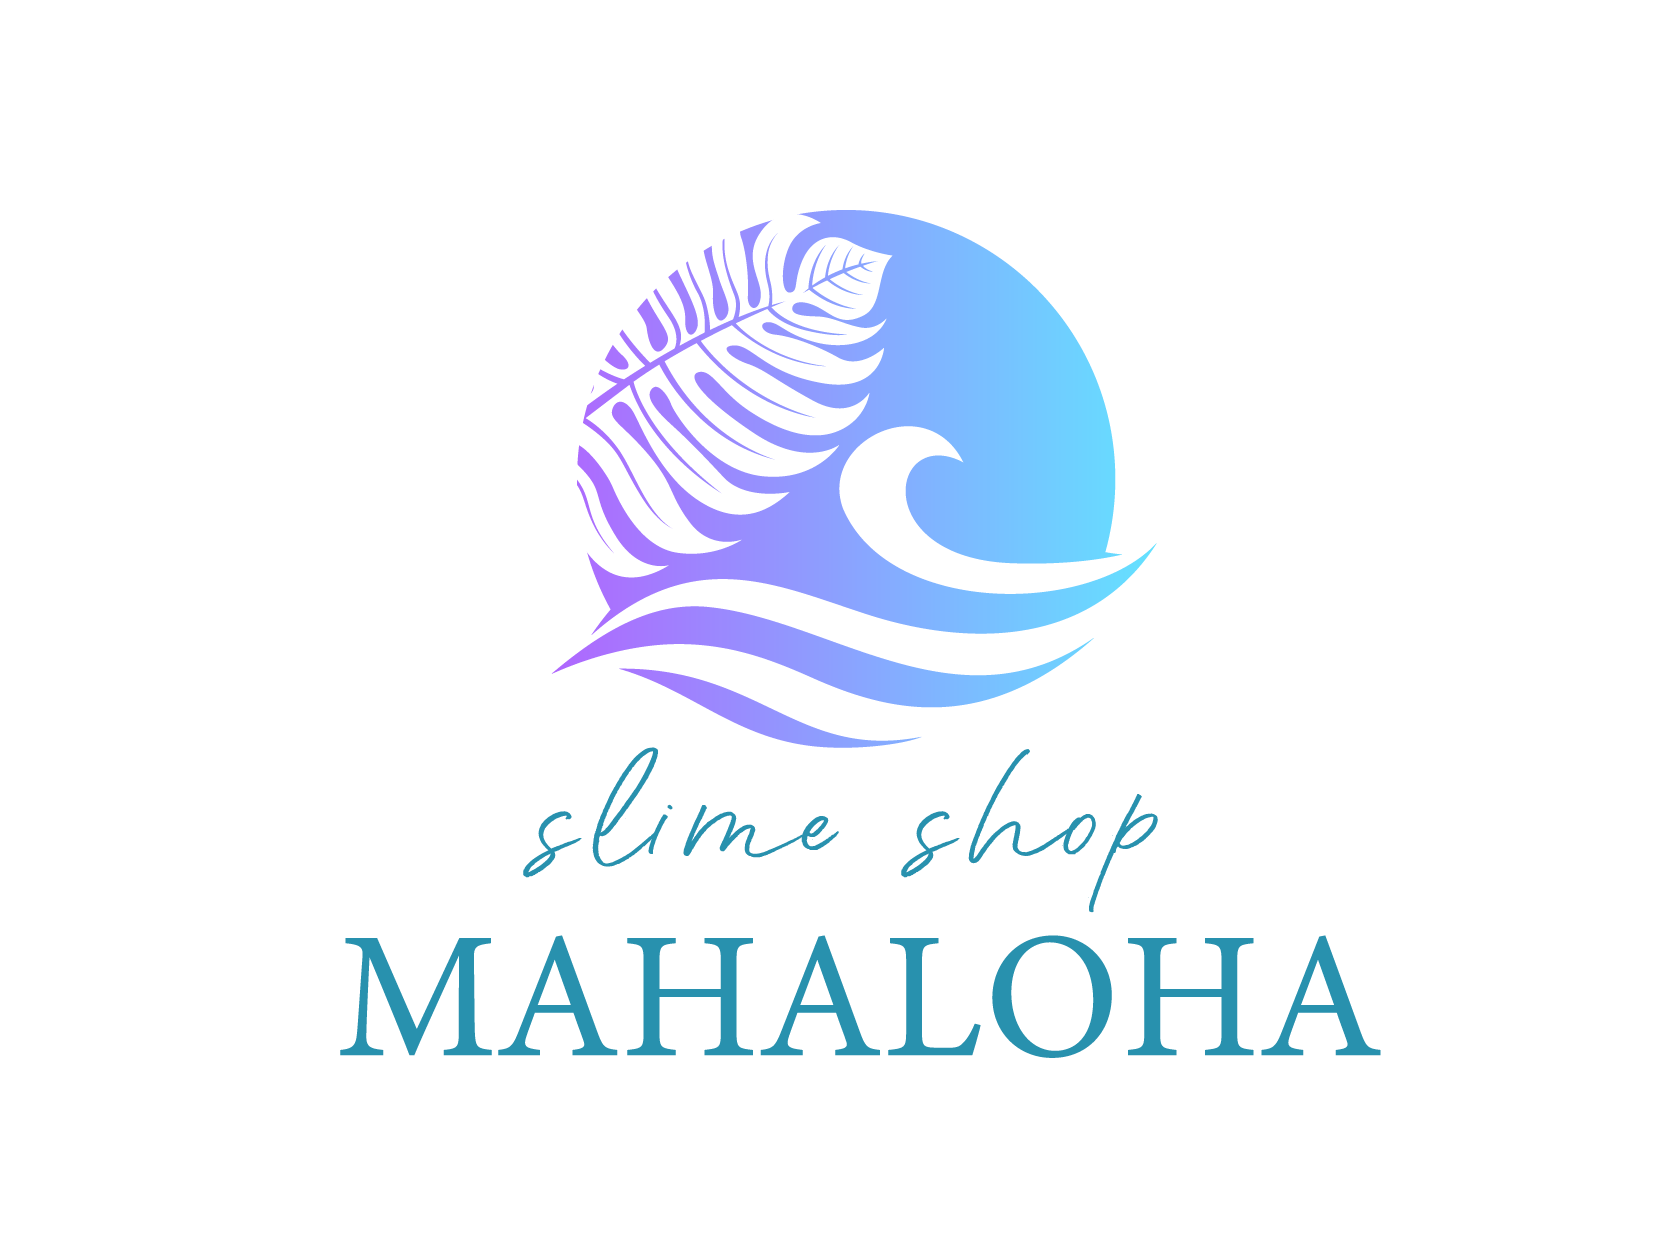 About Mahaloha Slime